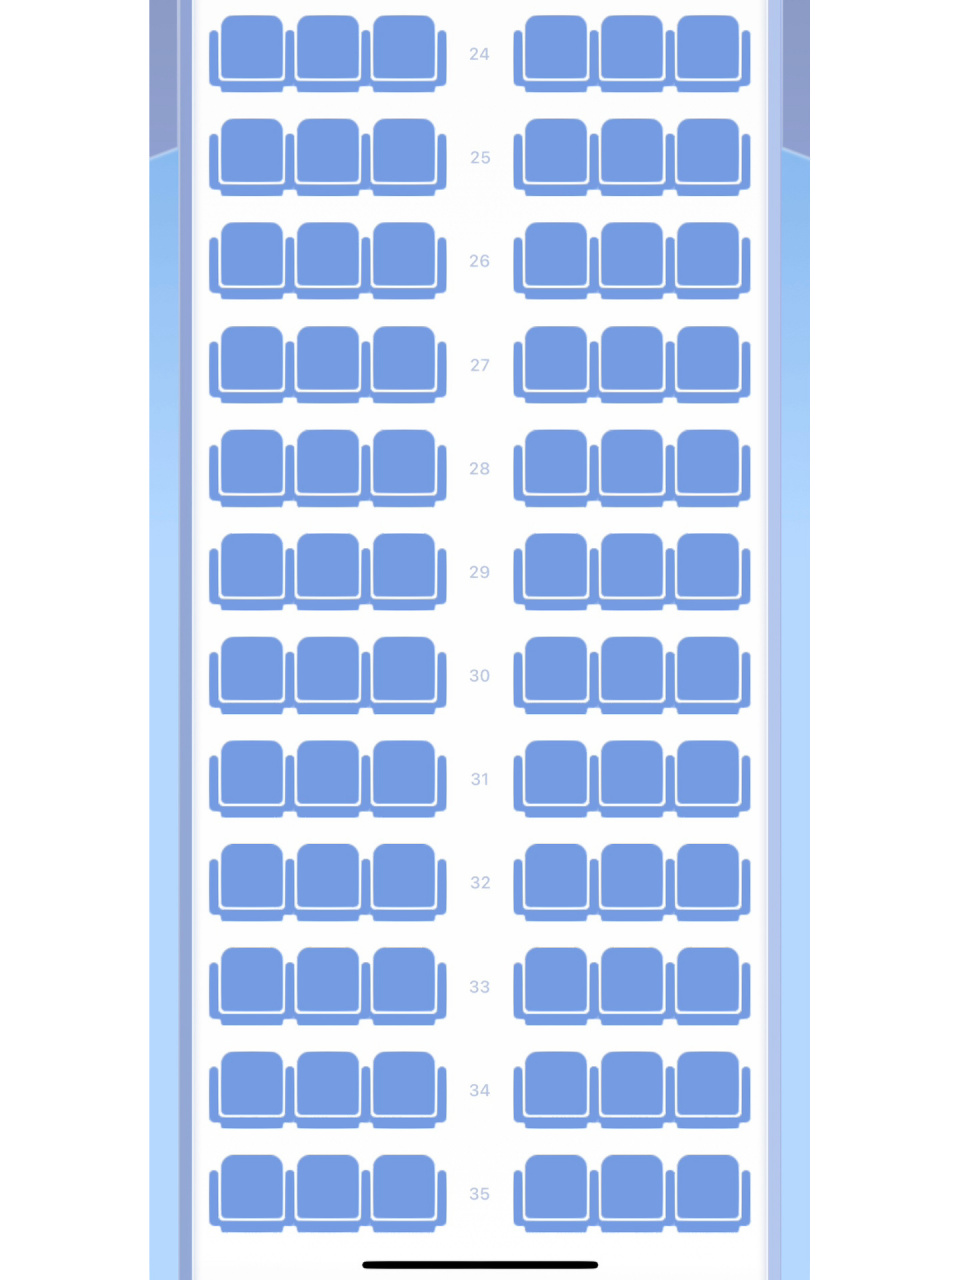 深航空客320座位图22排图片